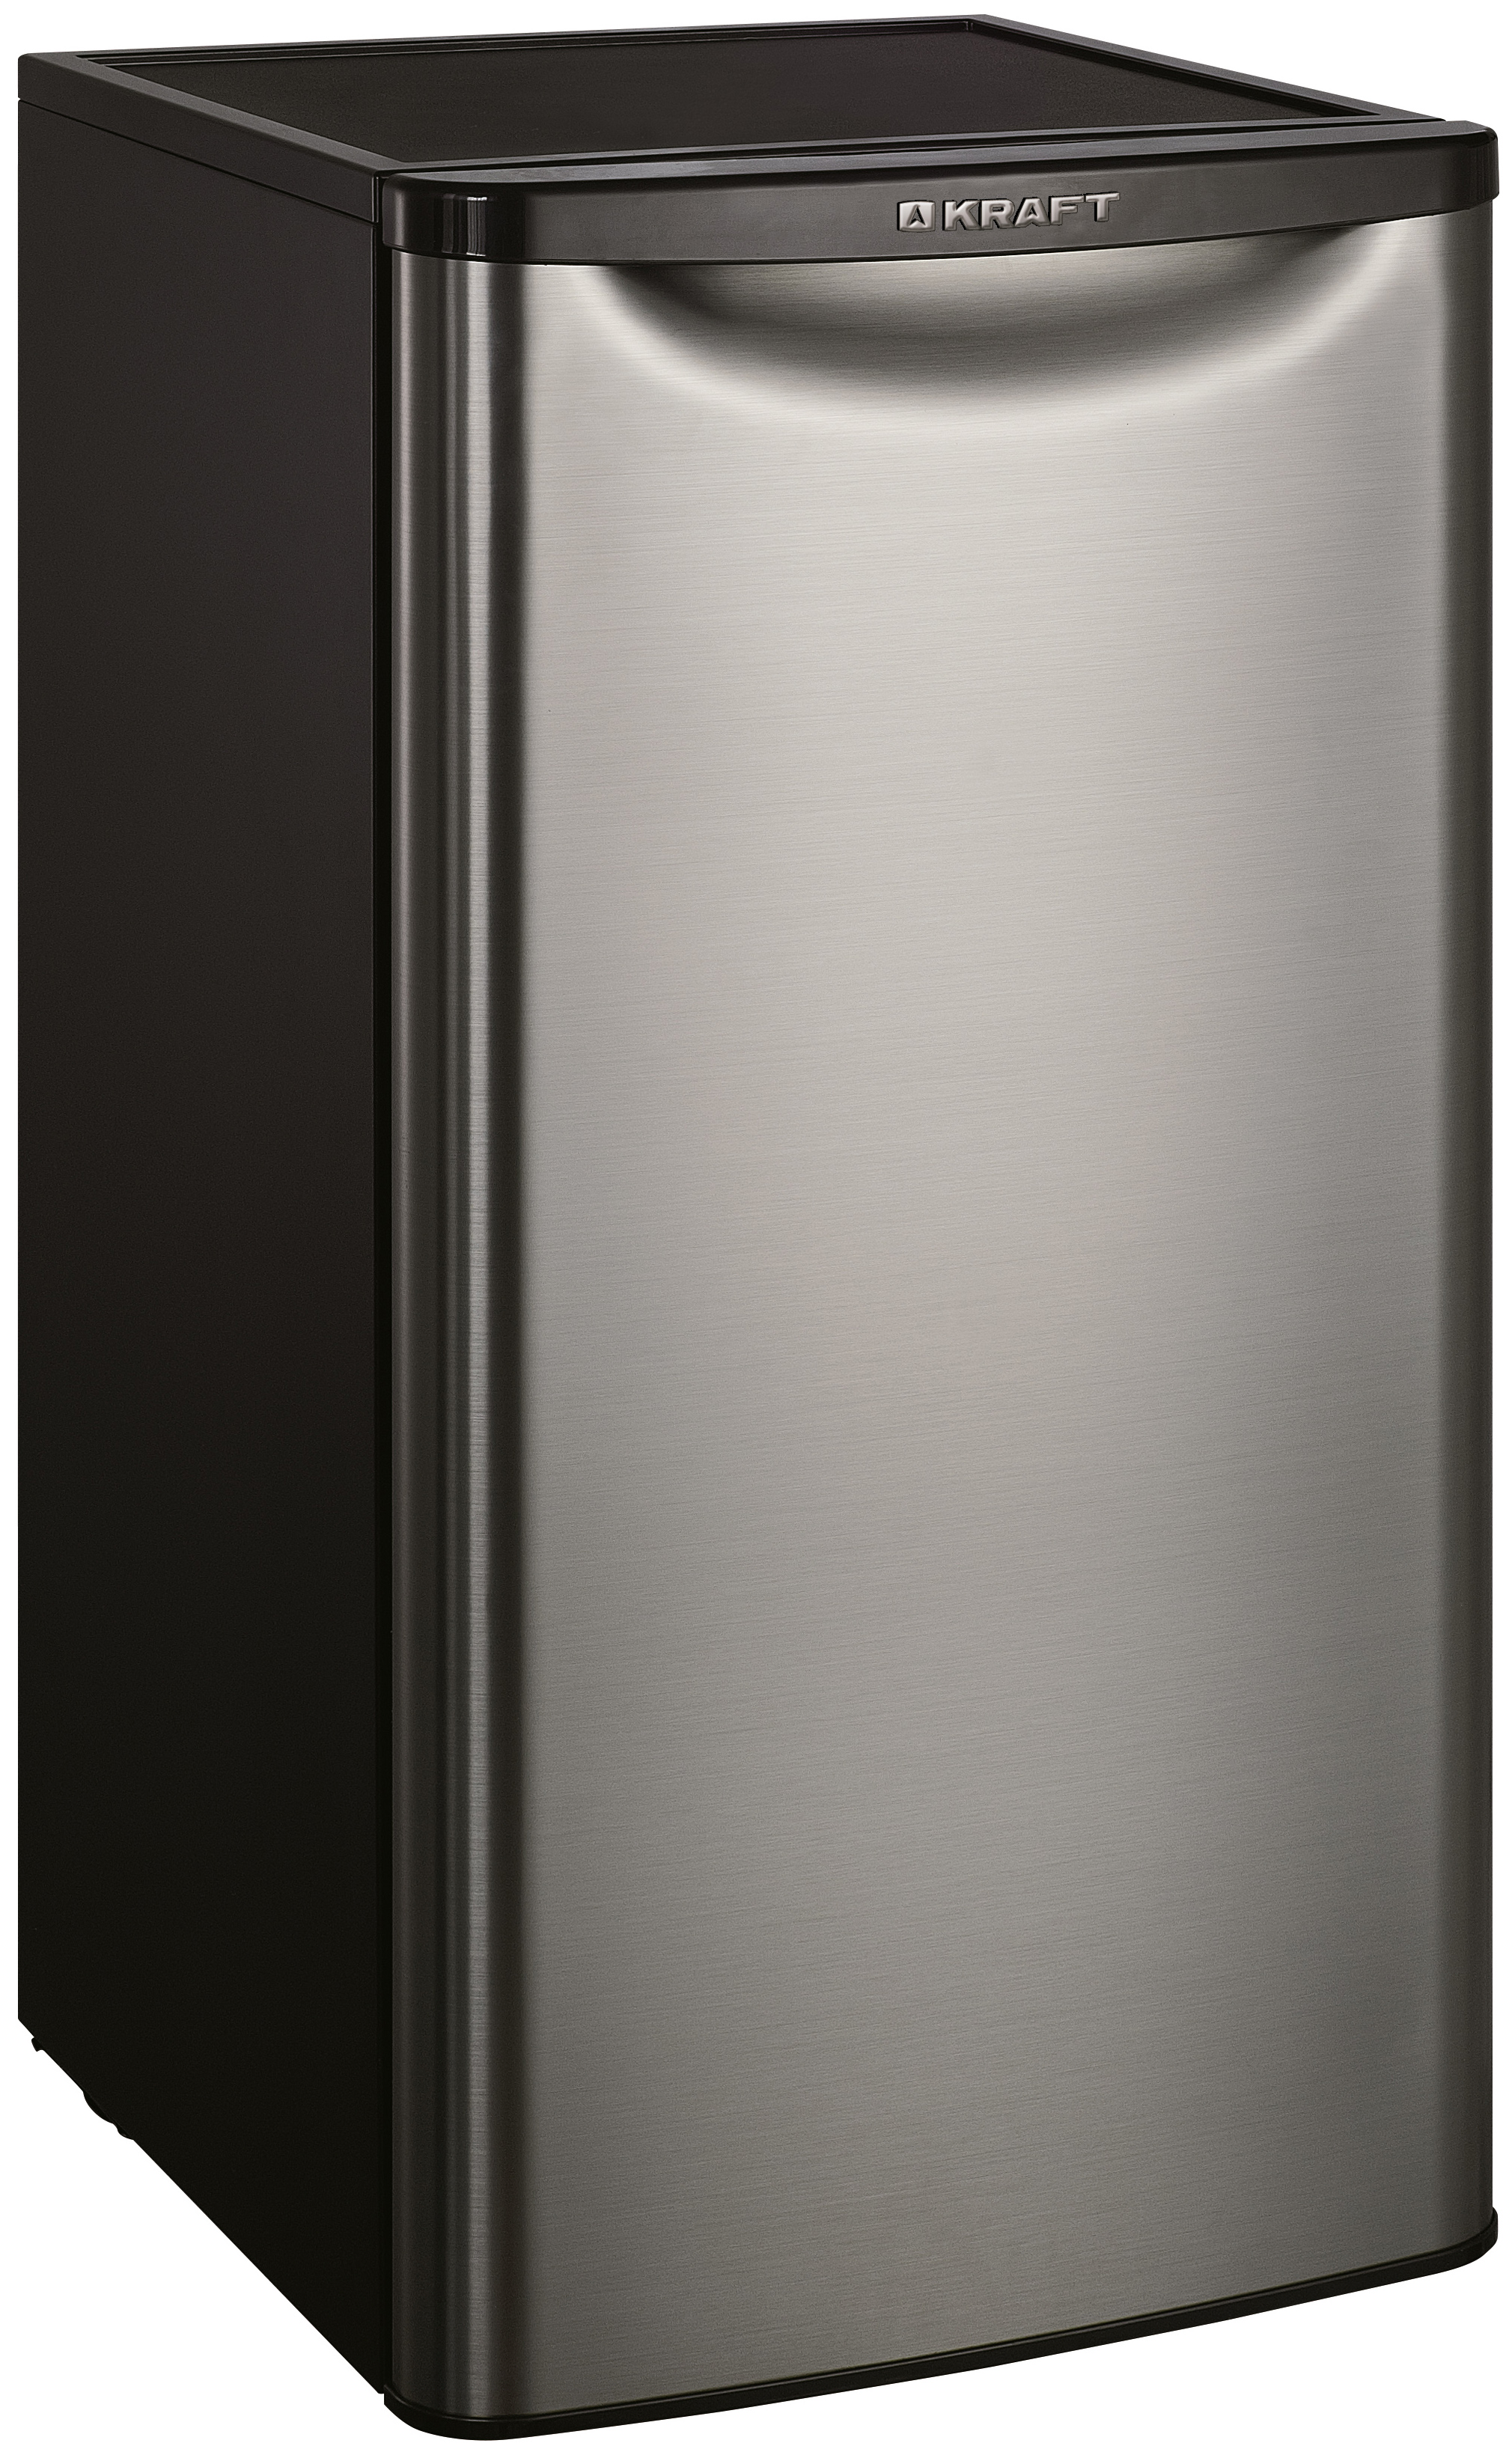 Холодильник KRAFT BR-95I серебристый однокамерный холодильник позис rs 411 серебристый